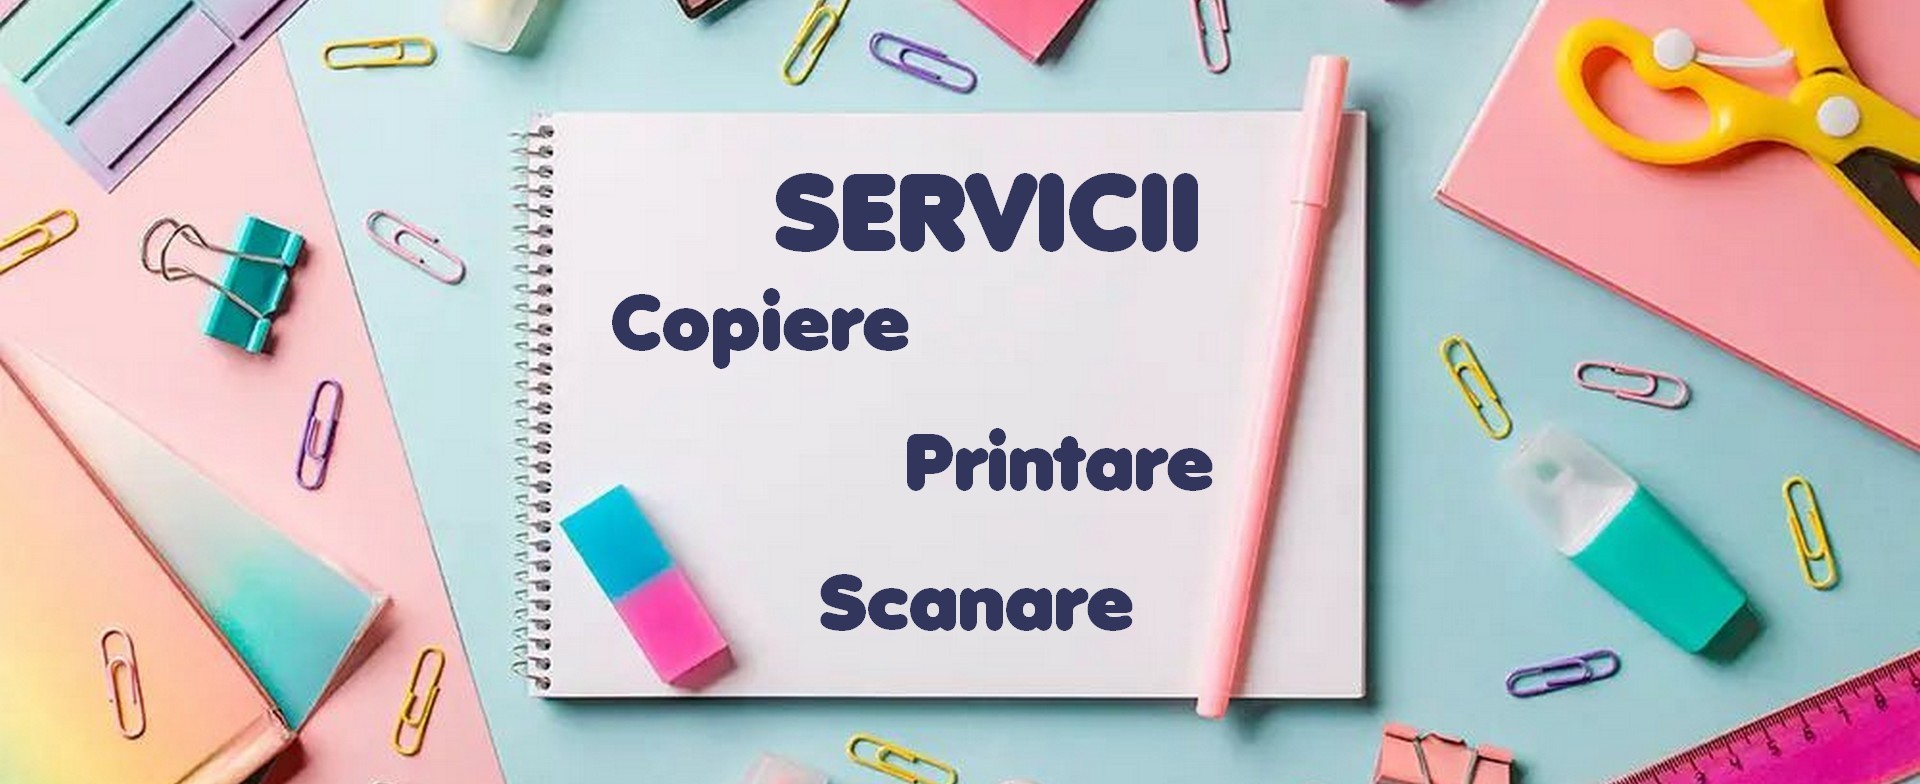 Servicii Copy and Print